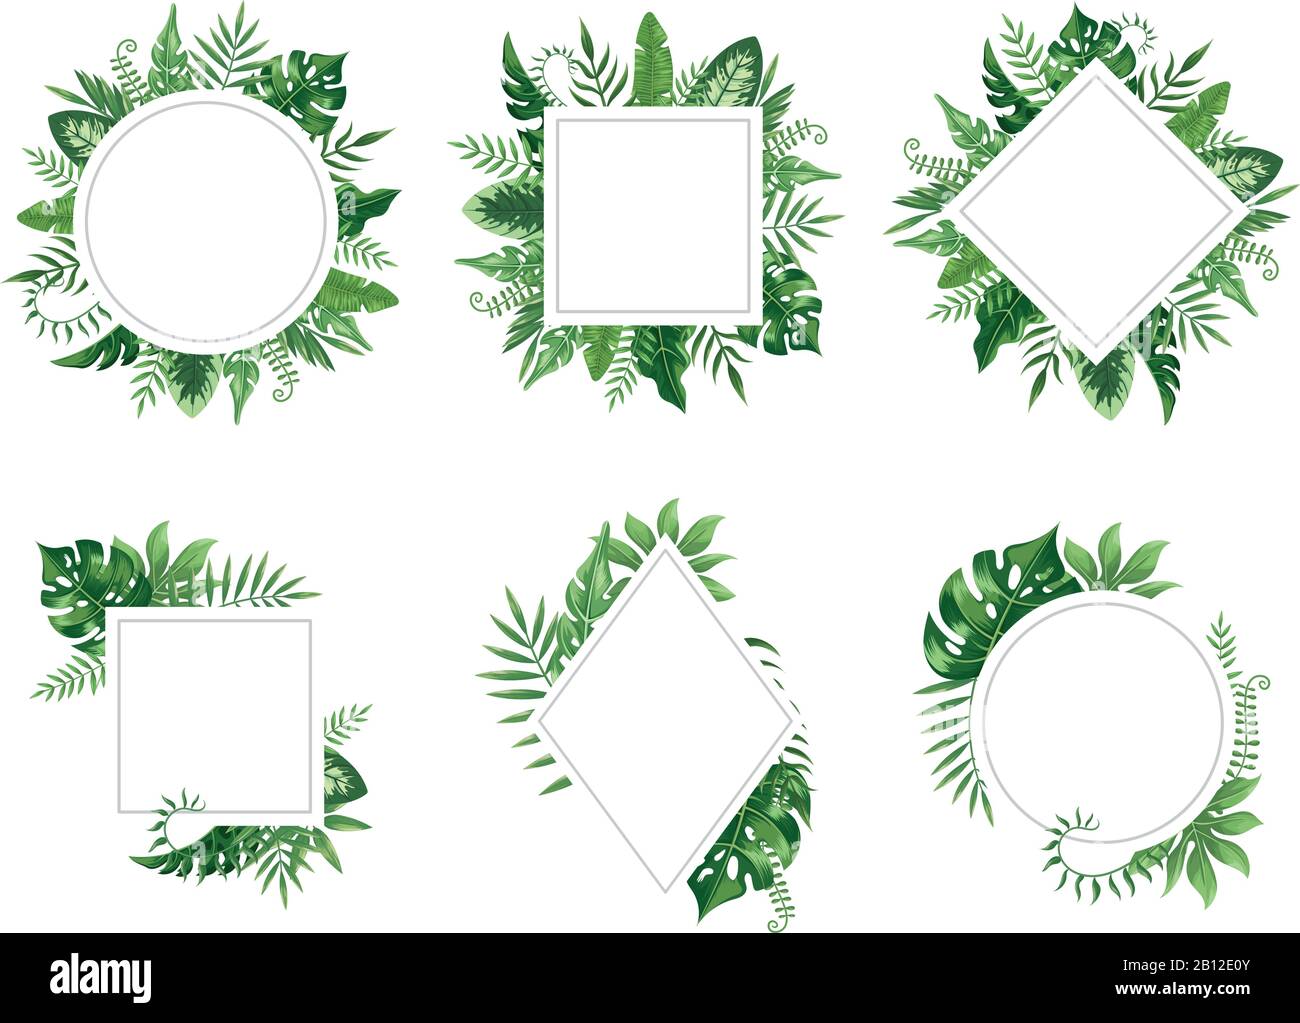 Marco de hojas exóticas. Tarjeta de hojas de primavera, marcos de árboles tropicales y vintage floral selva borde conjunto de vectores aislados Ilustración del Vector